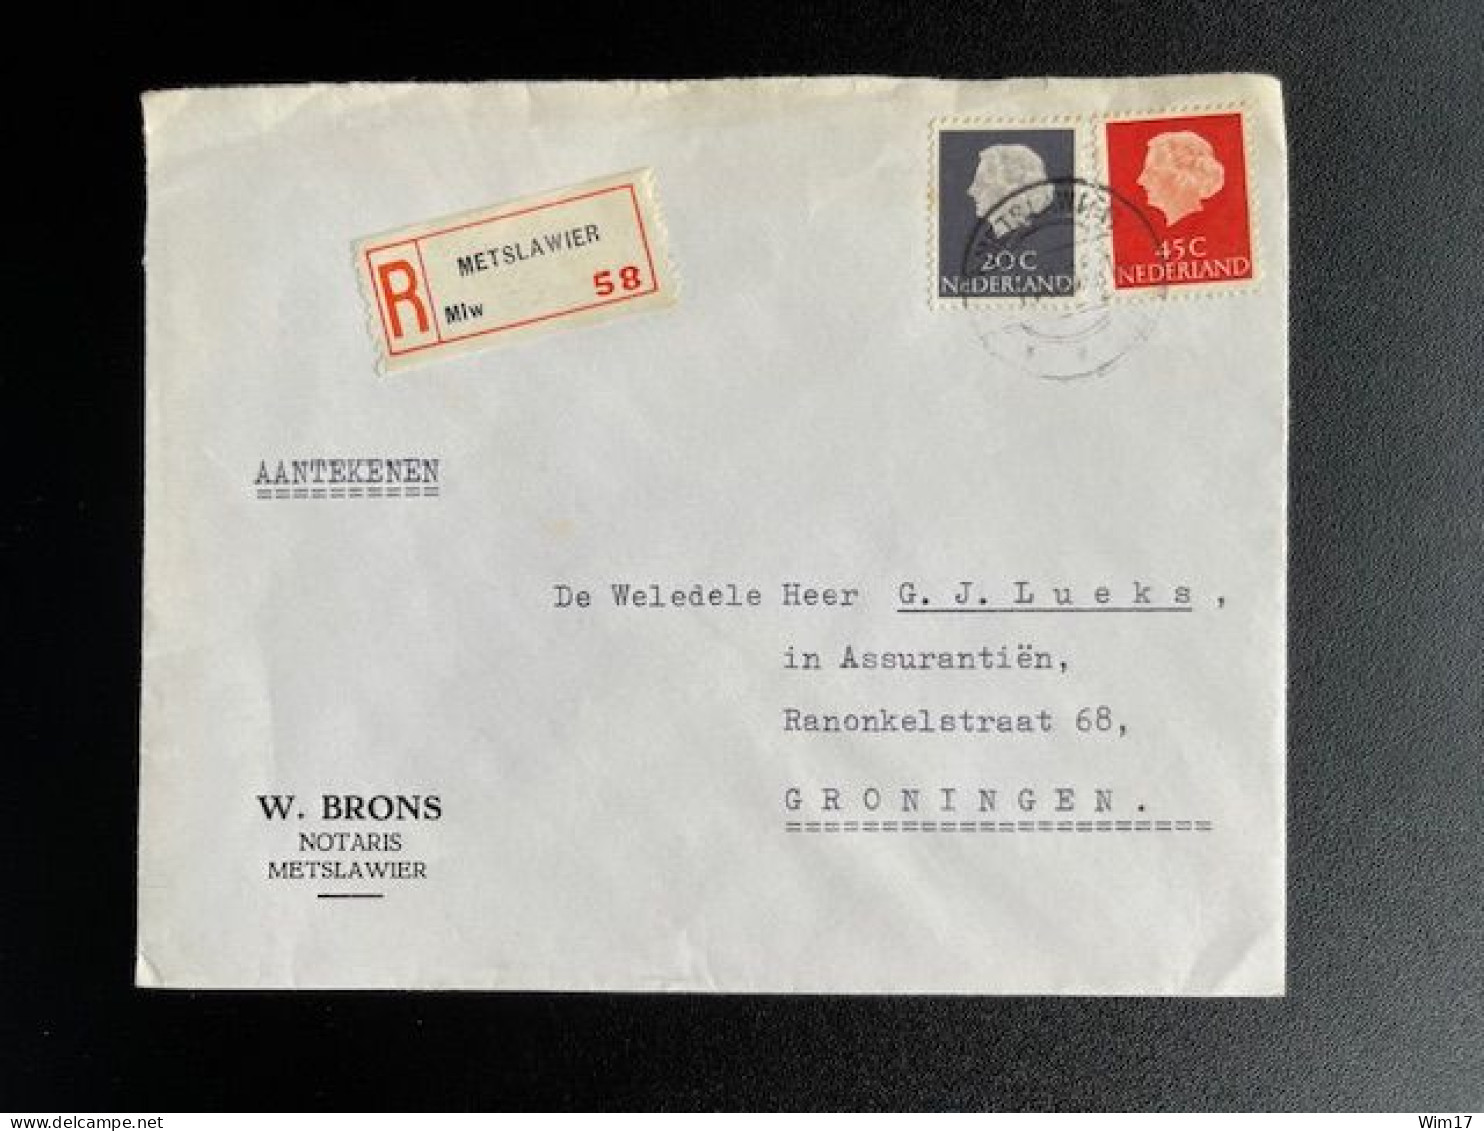 NETHERLANDS 1966 REGISTERED LETTER METSLAWIER TO GRONINGEN 01-11-1966 NEDERLAND AANGETEKEND - Briefe U. Dokumente